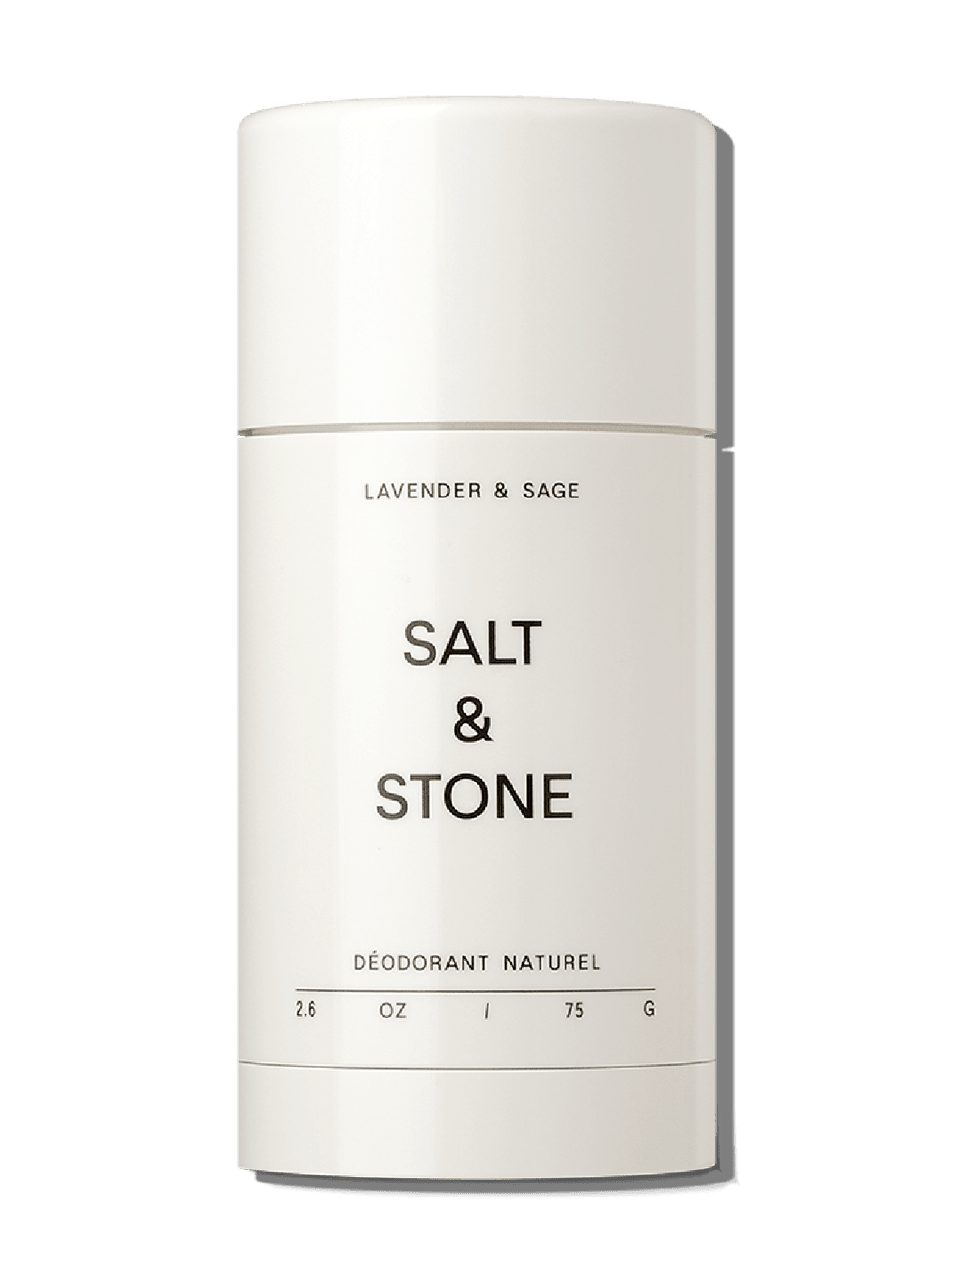 Natural Deodorant Gel for Sensitive Skin – SALT & STONE